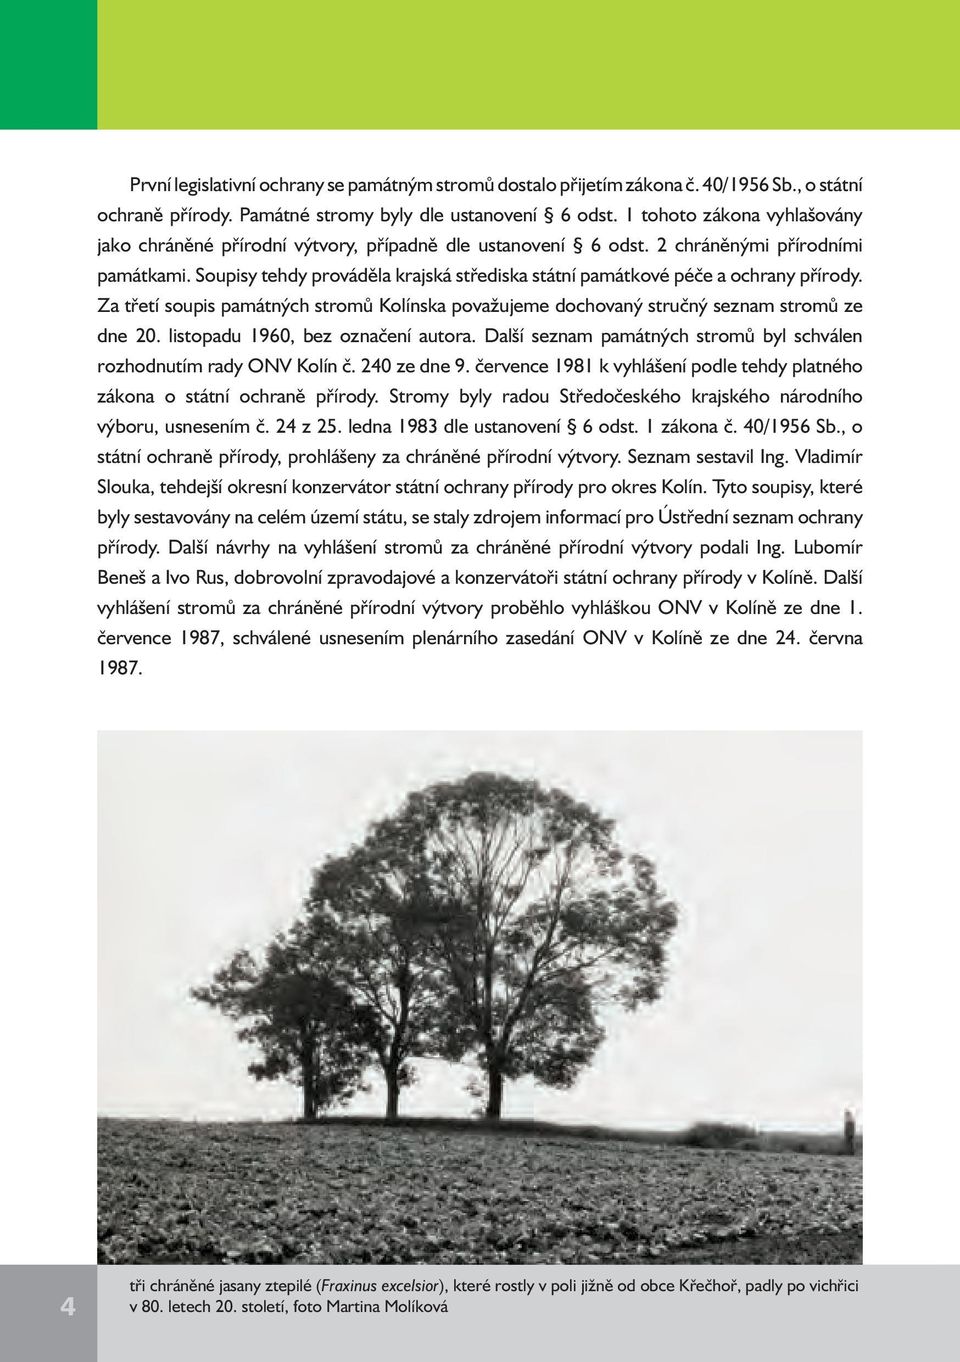 Soupisy tehdy prováděla krajská střediska státní památkové péče a ochrany přírody. Za třetí soupis památných stromů Kolínska považujeme dochovaný stručný seznam stromů ze dne 20.